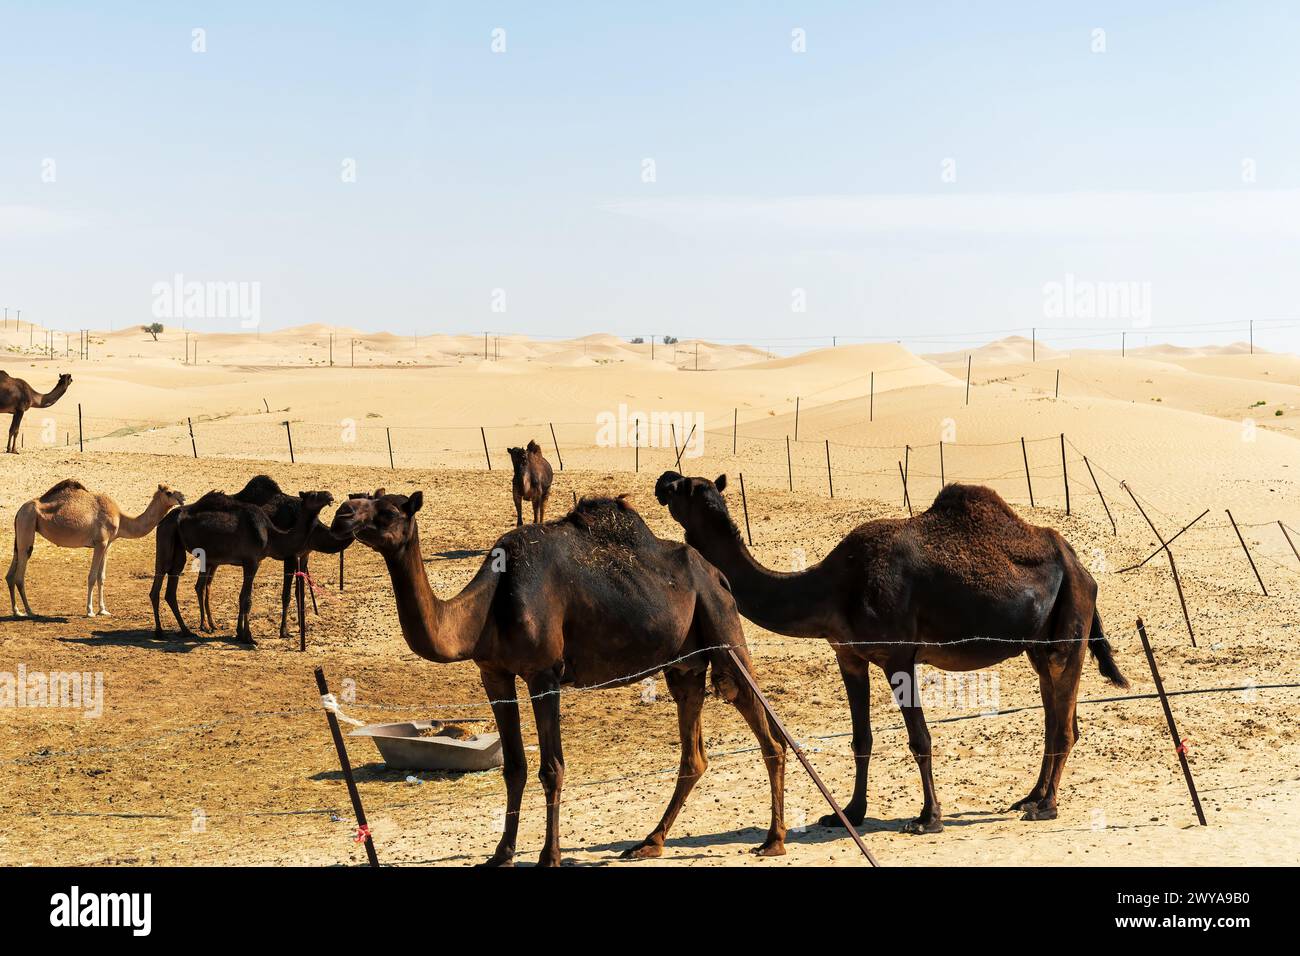 Eine Kamelherde tief im Sand der arabischen Wüste. Natur- und Tierthemen Stockfoto